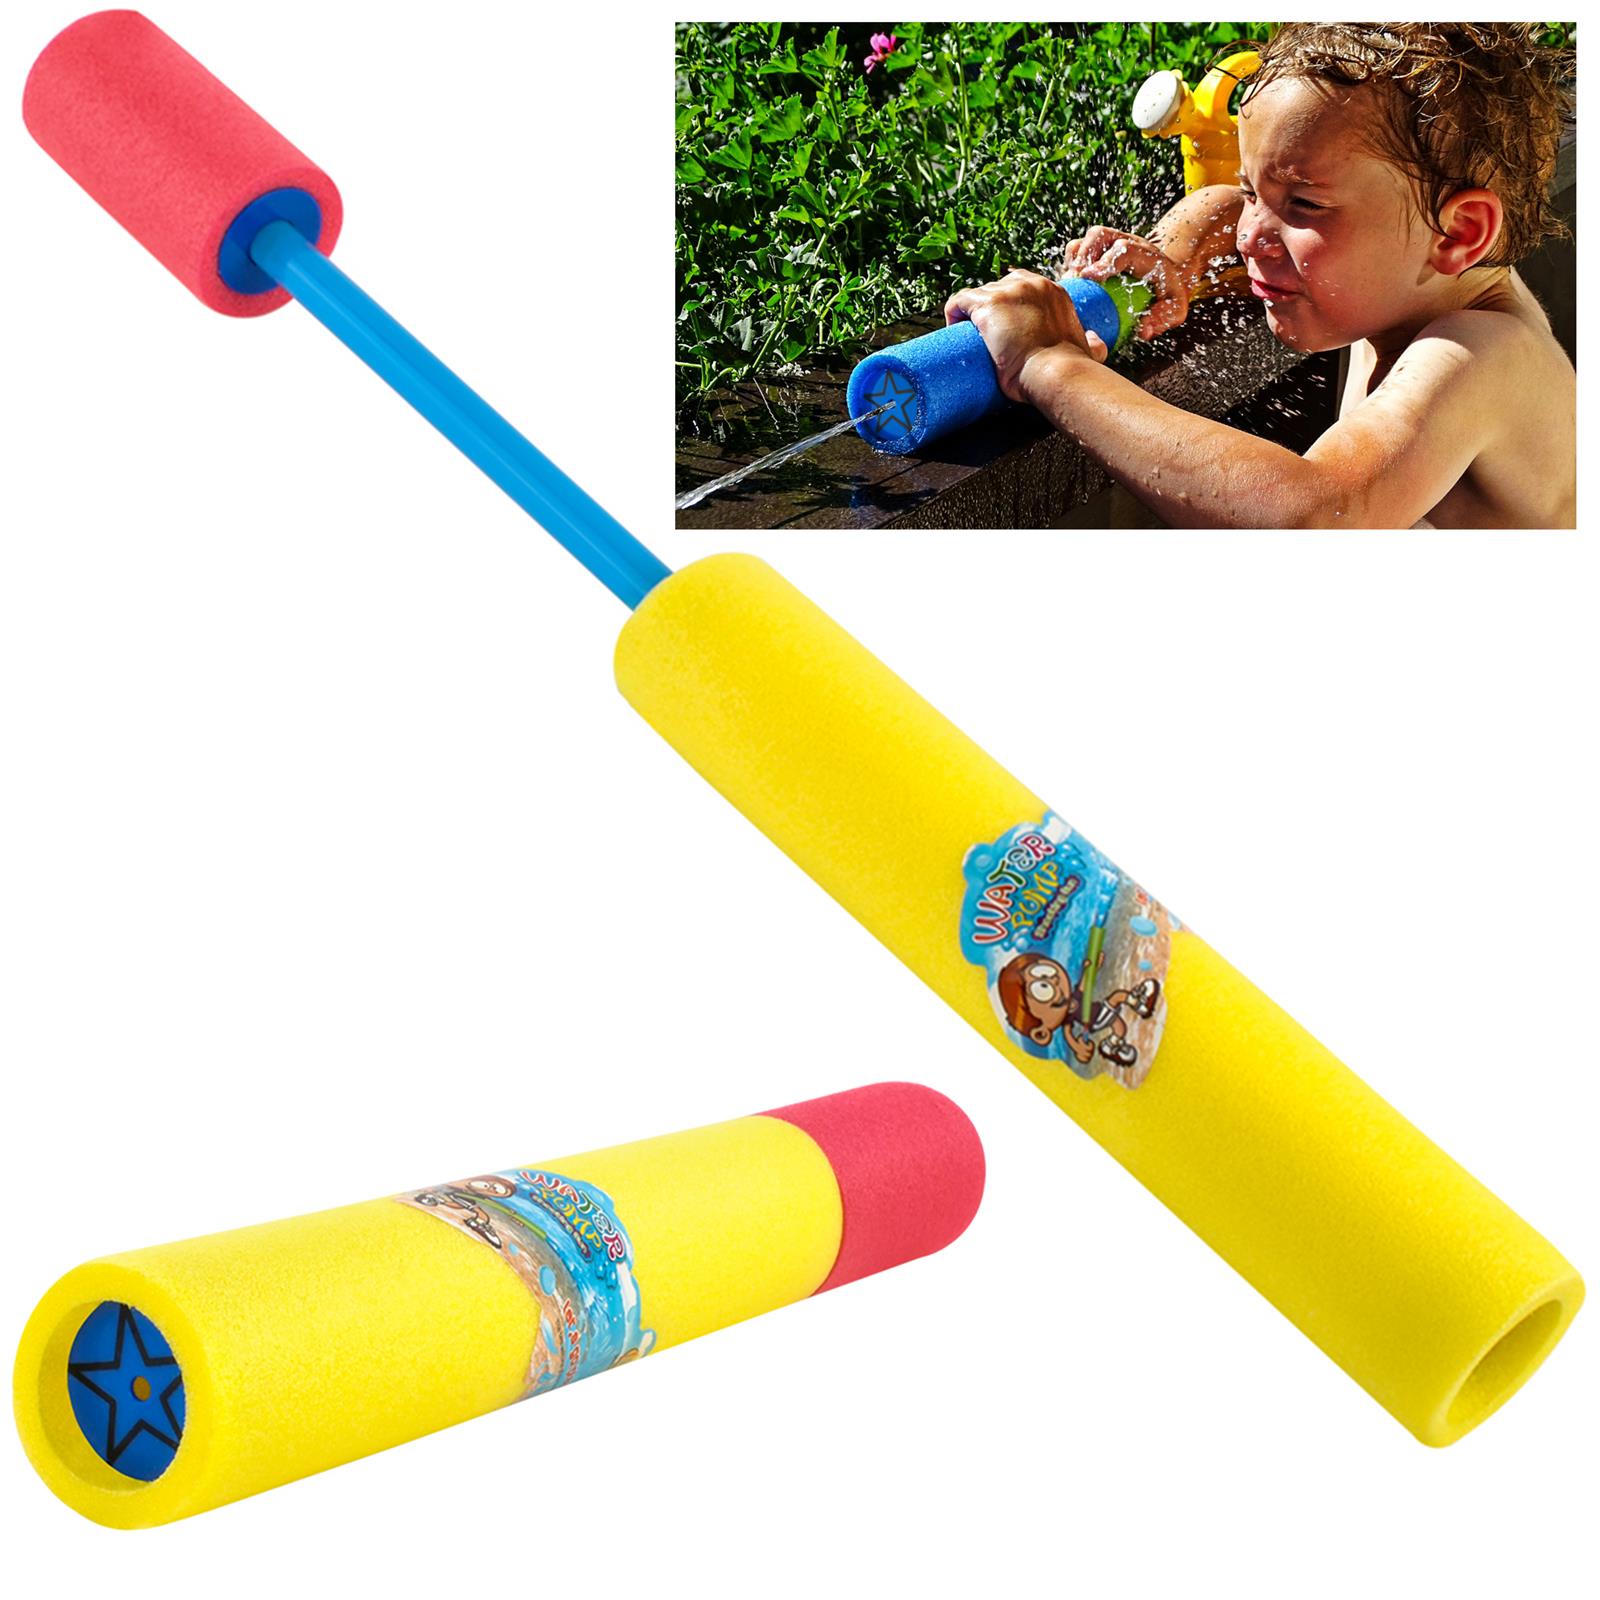 Puha, könnyű habszivacsból készült vízipisztoly gyerekeknek, 10 m-es vízsugár – 35cm x 5cm, többszínű (BB-7281) (4)